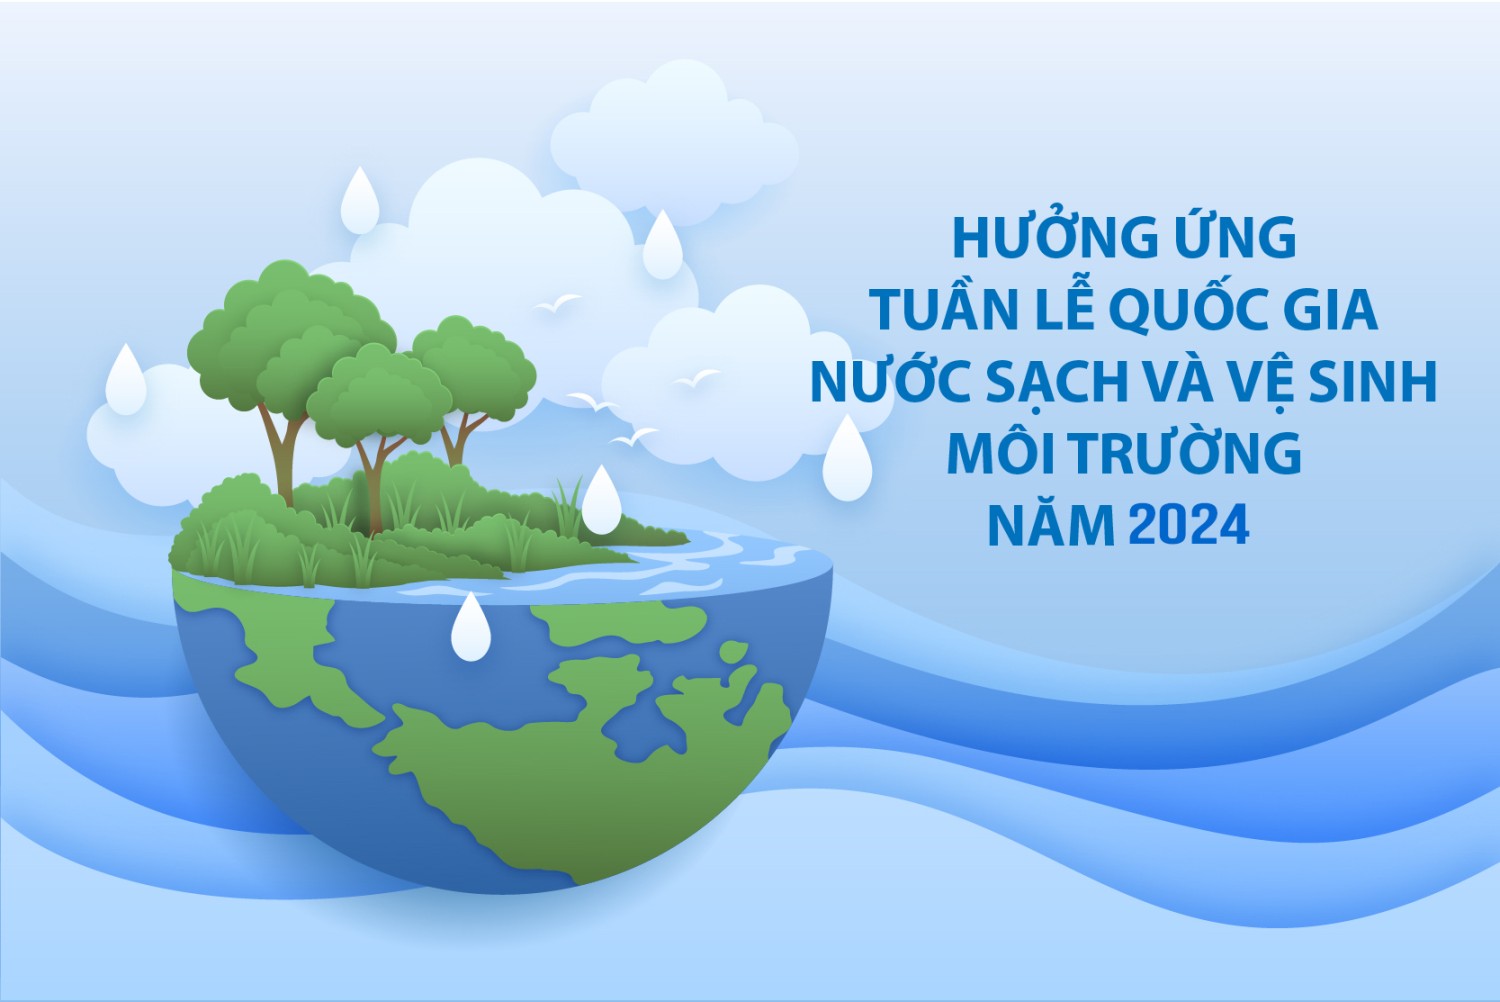 UBND quận Ba Đình triển khai hưởng ứng Tuần lễ quốc gia nước sạch và vệ sinh môi trường năm 2024